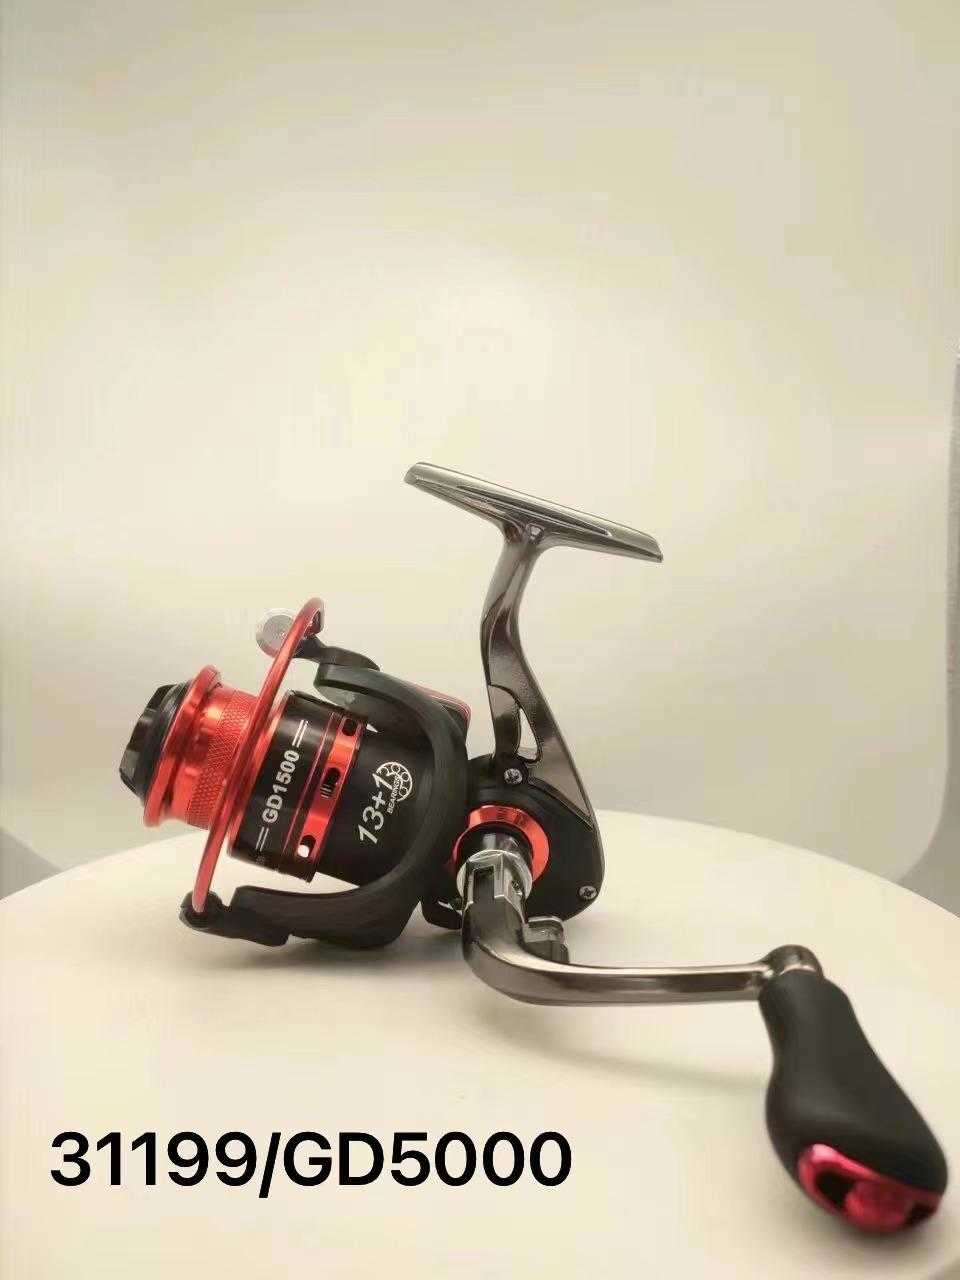 Fishing machine - GD5000 - 31199